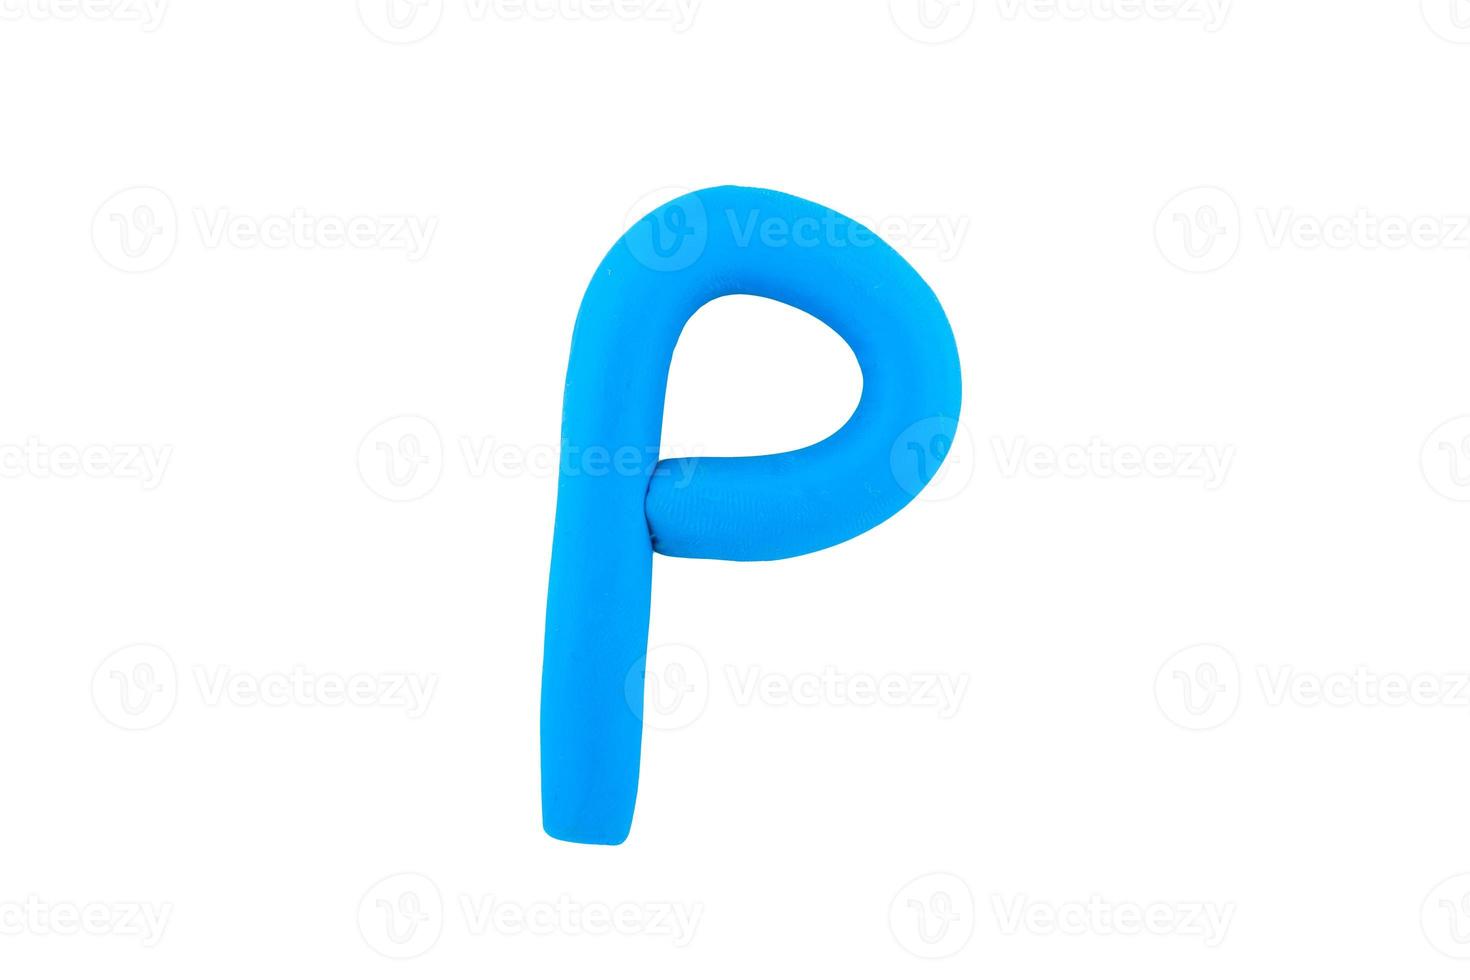 alfabet p engels kleurrijke letters handgemaakte letters gegoten uit plasticine klei op geïsoleerde witte achtergrond foto